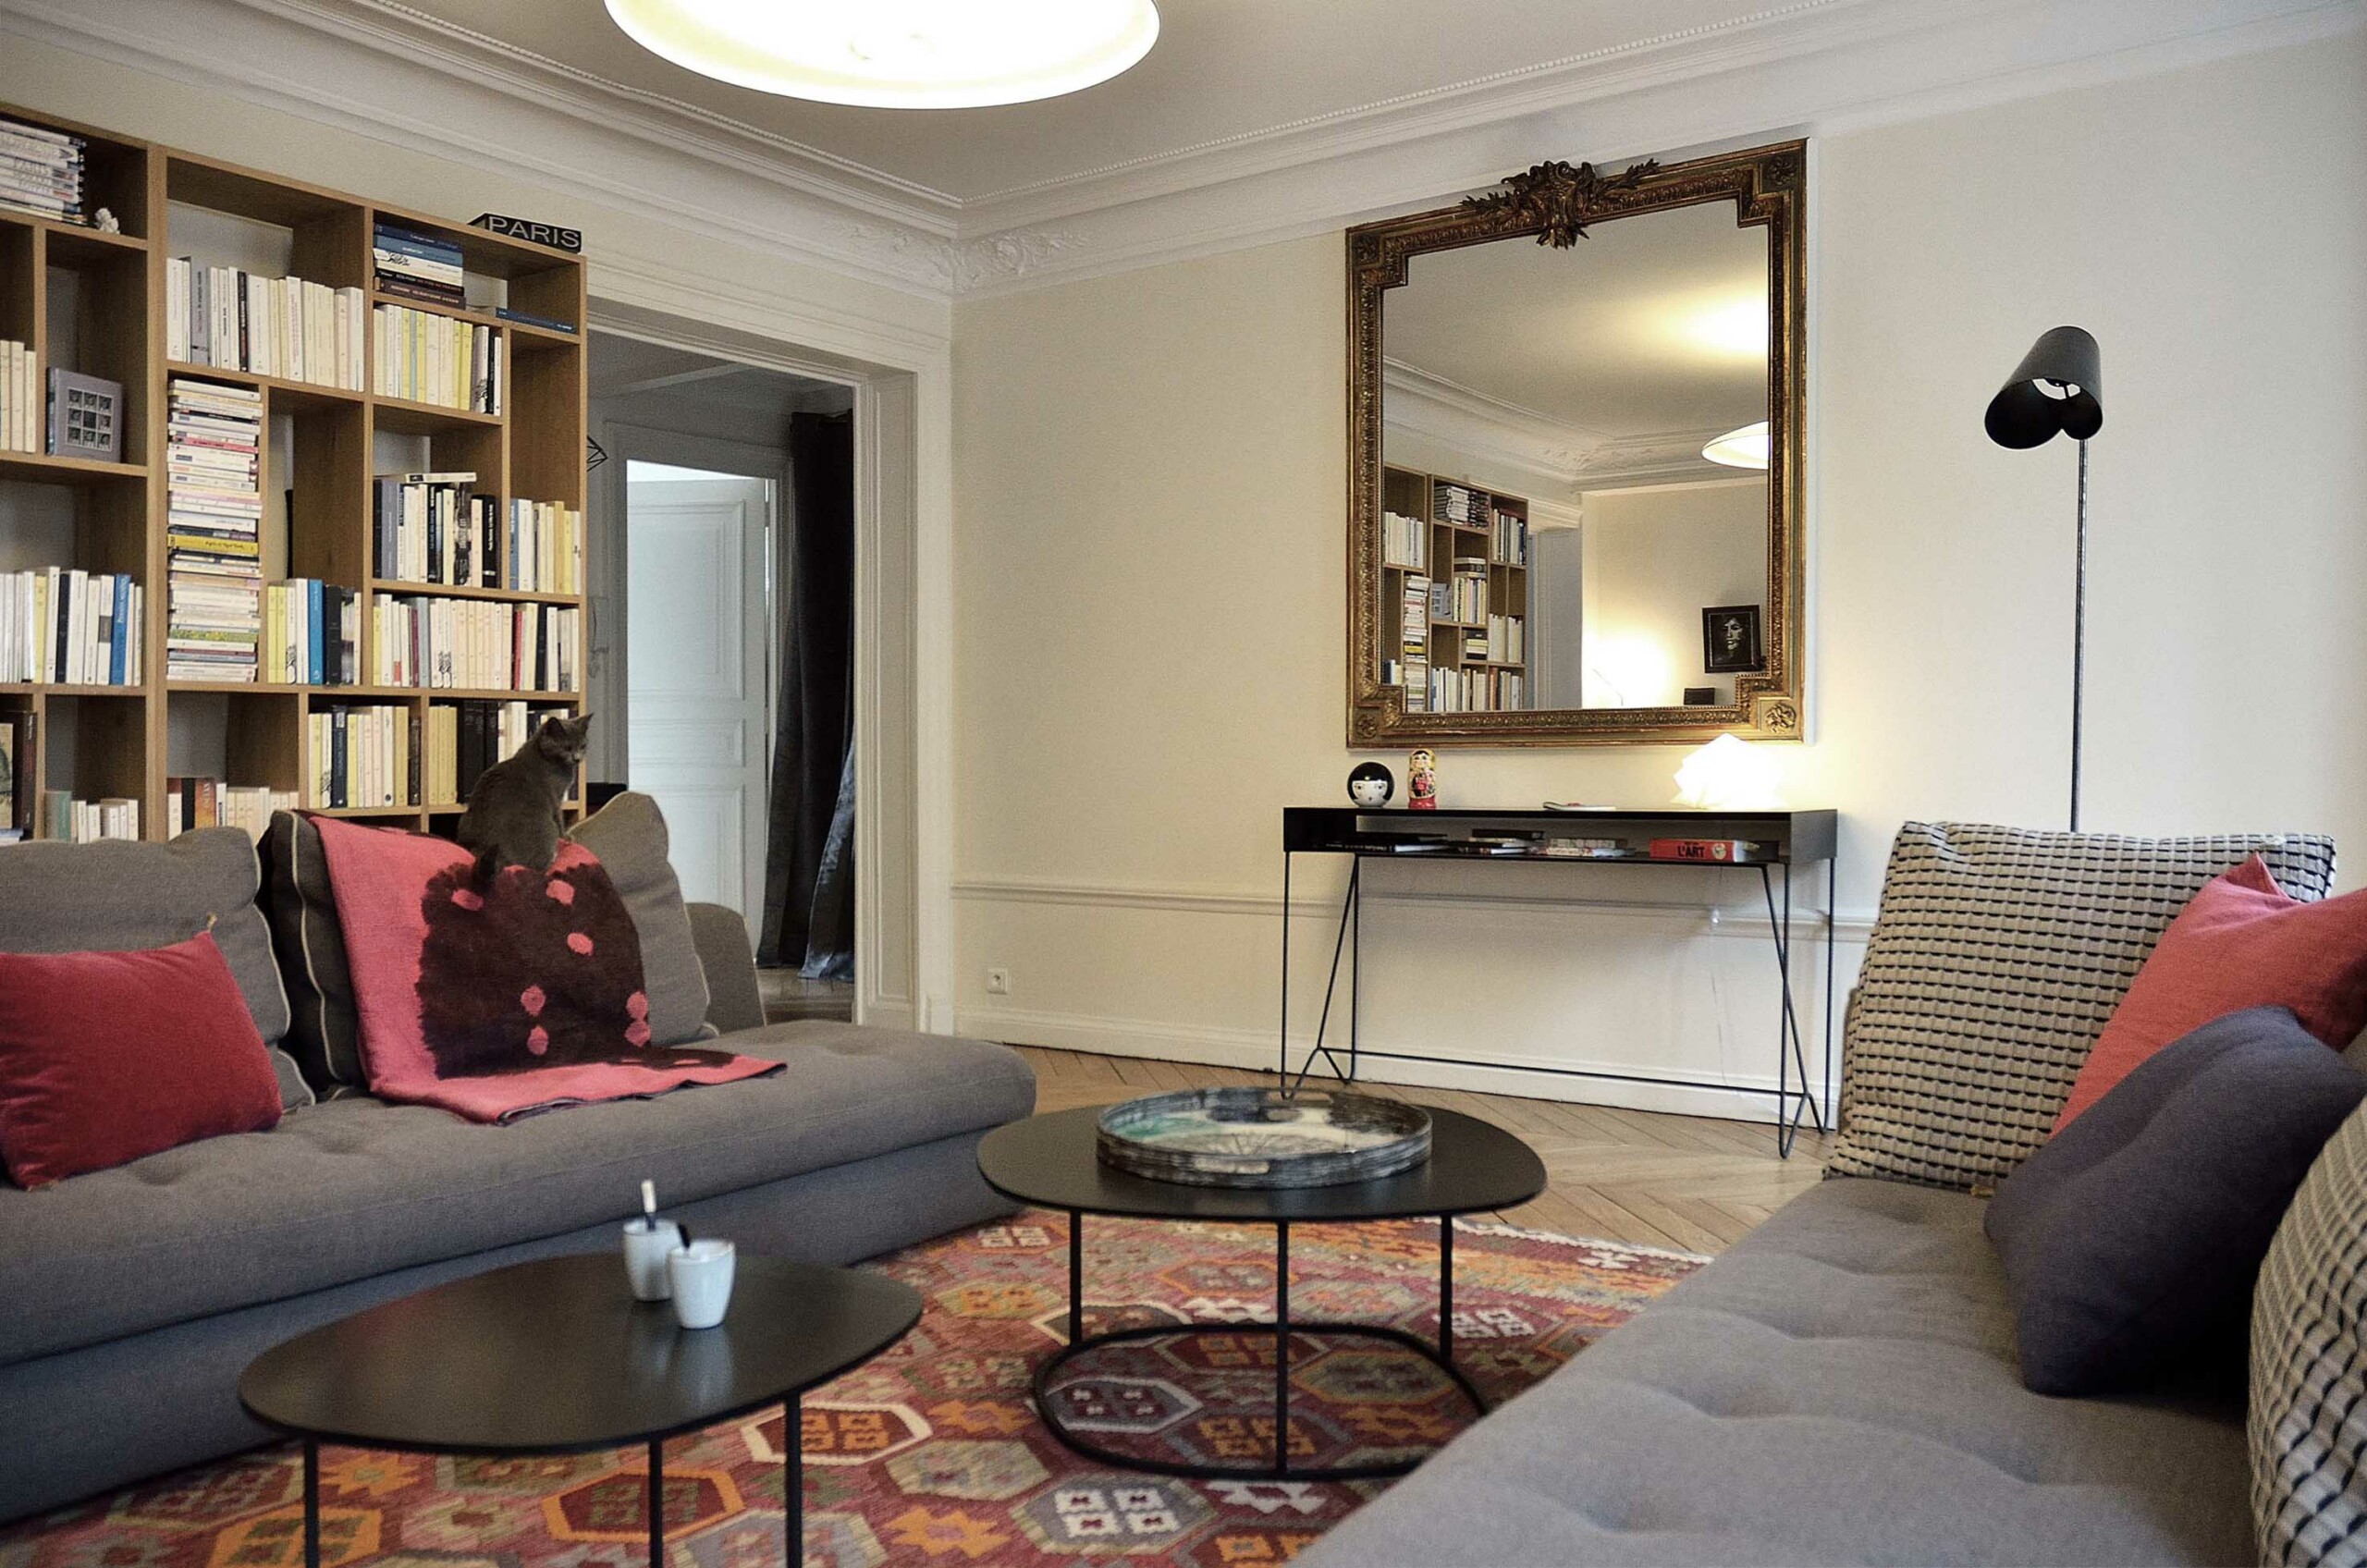 Projet Mirosmenil : agencement d’un appartement parisien - Salon, Agence Oz by cath, architecture d'intérieur